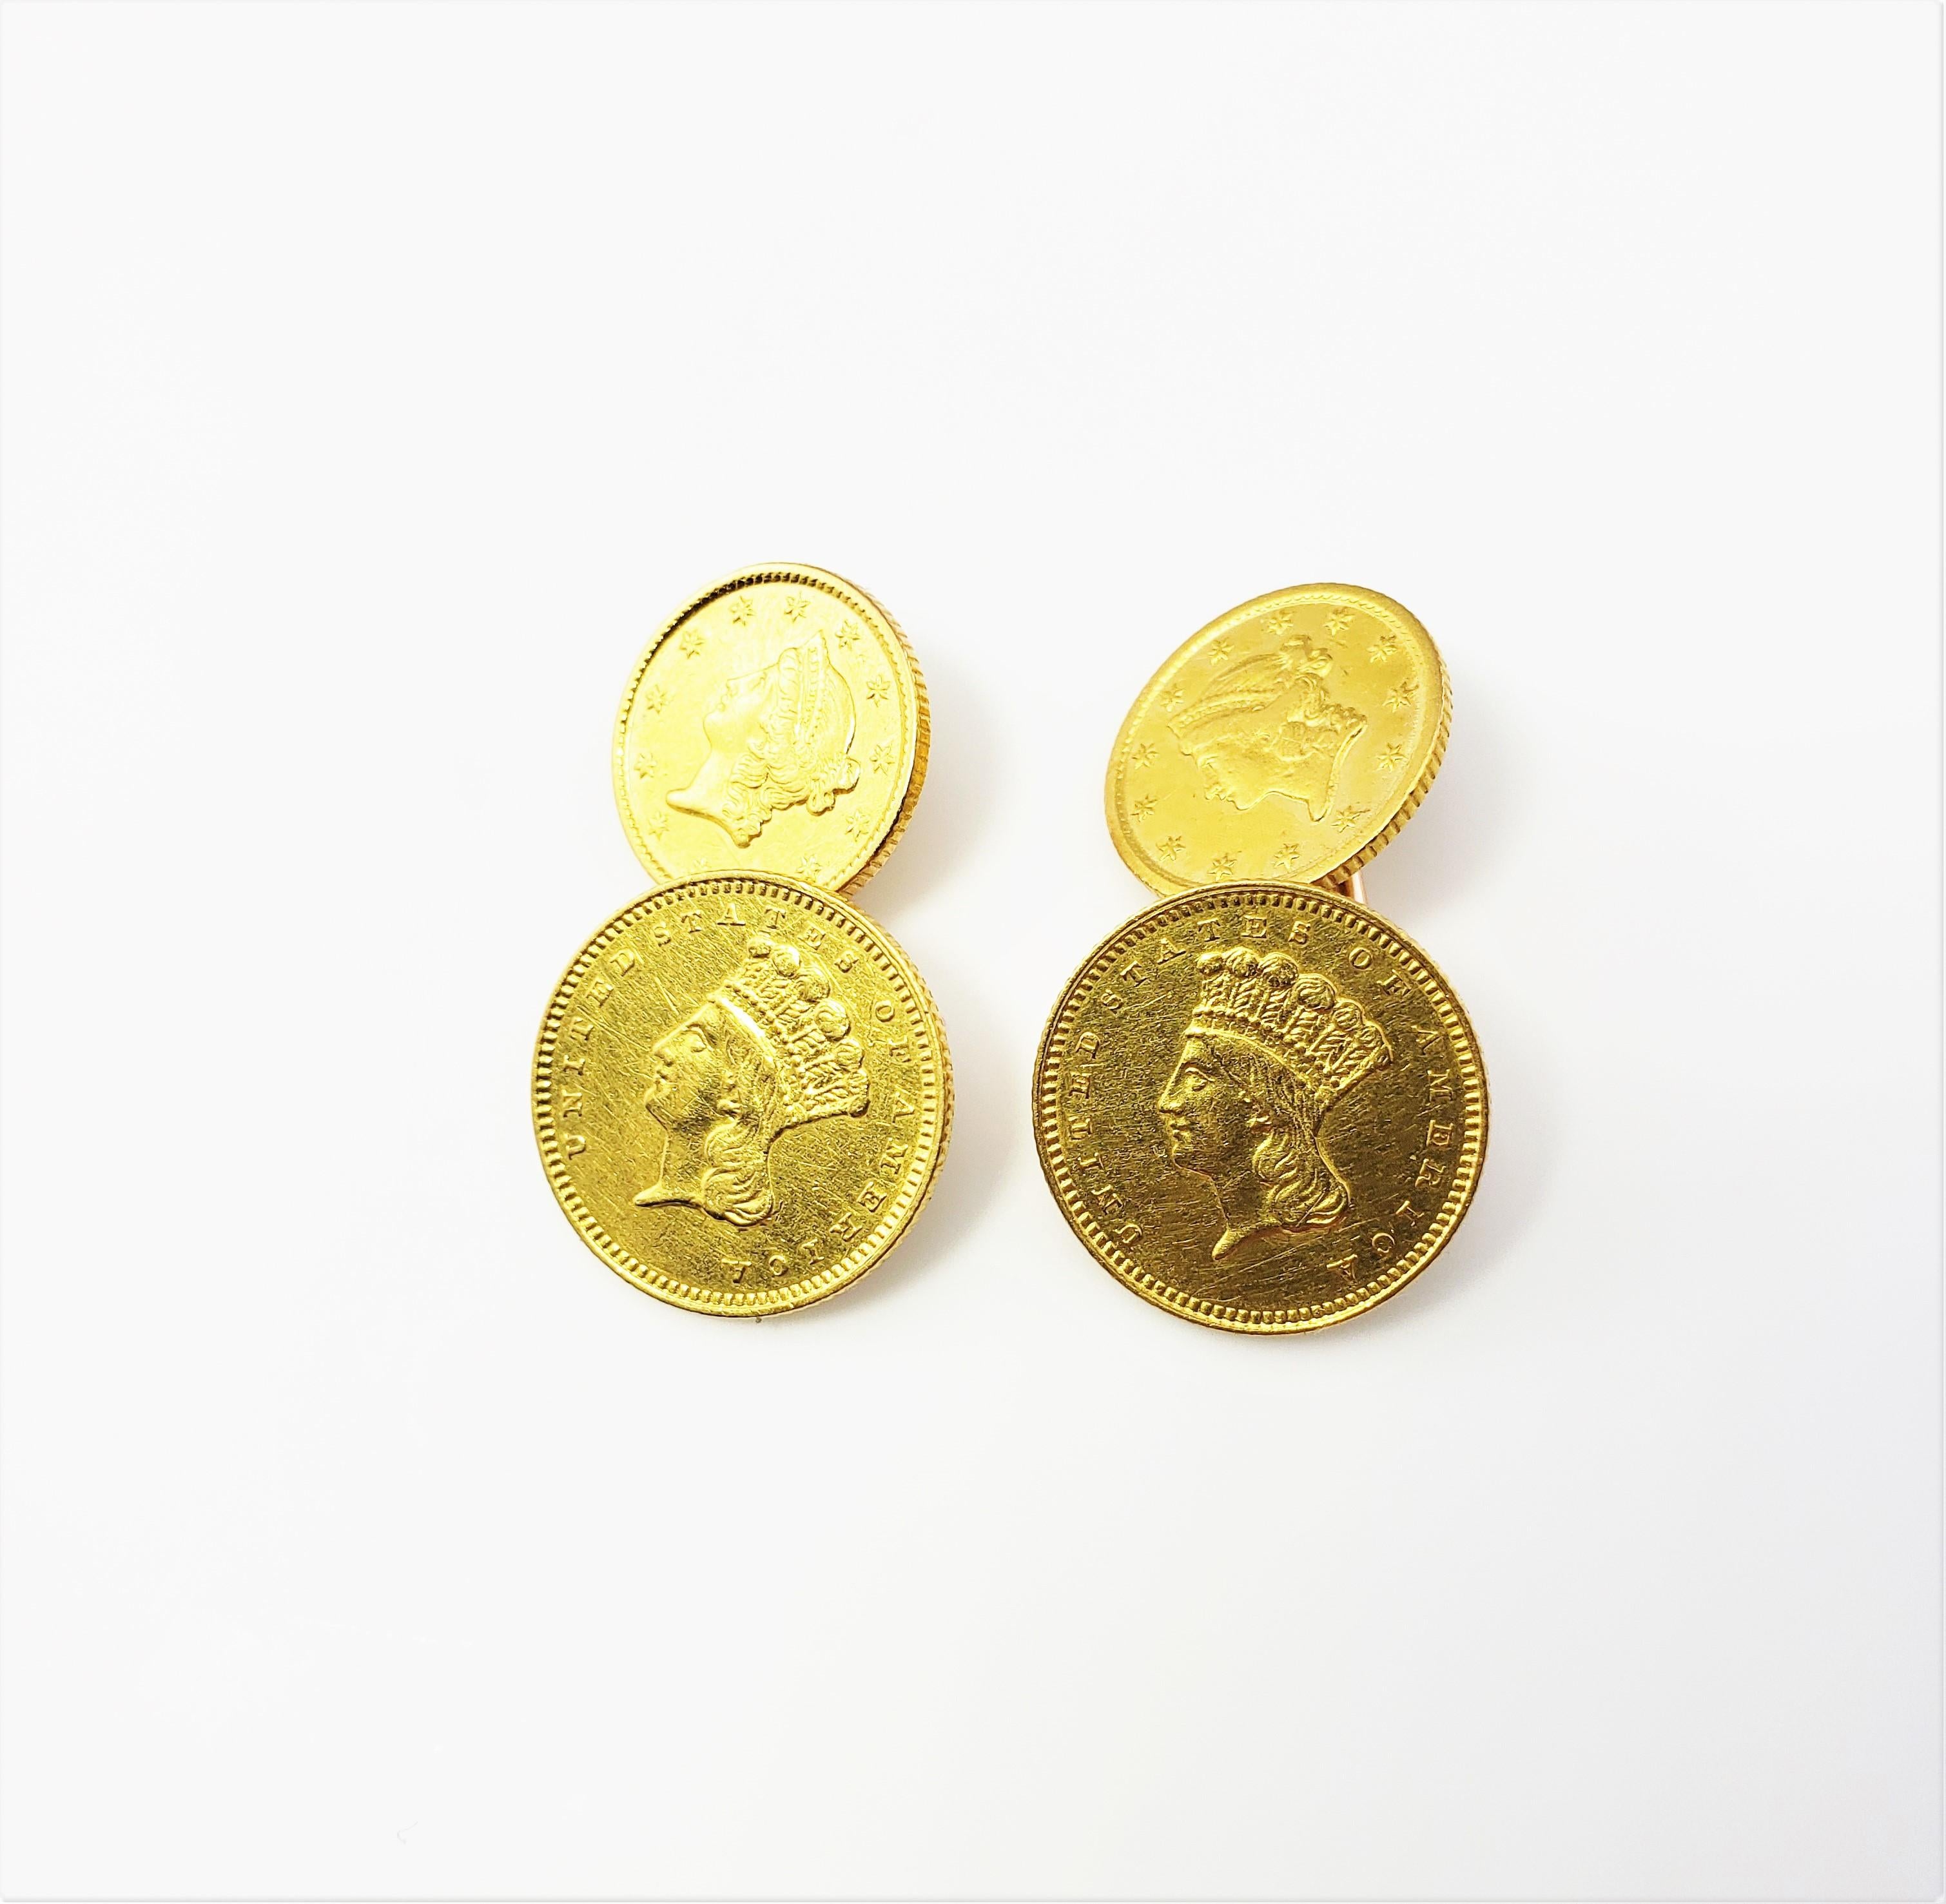 14 Karat Yellow Gold Indian Head Coin Cufflinks 1